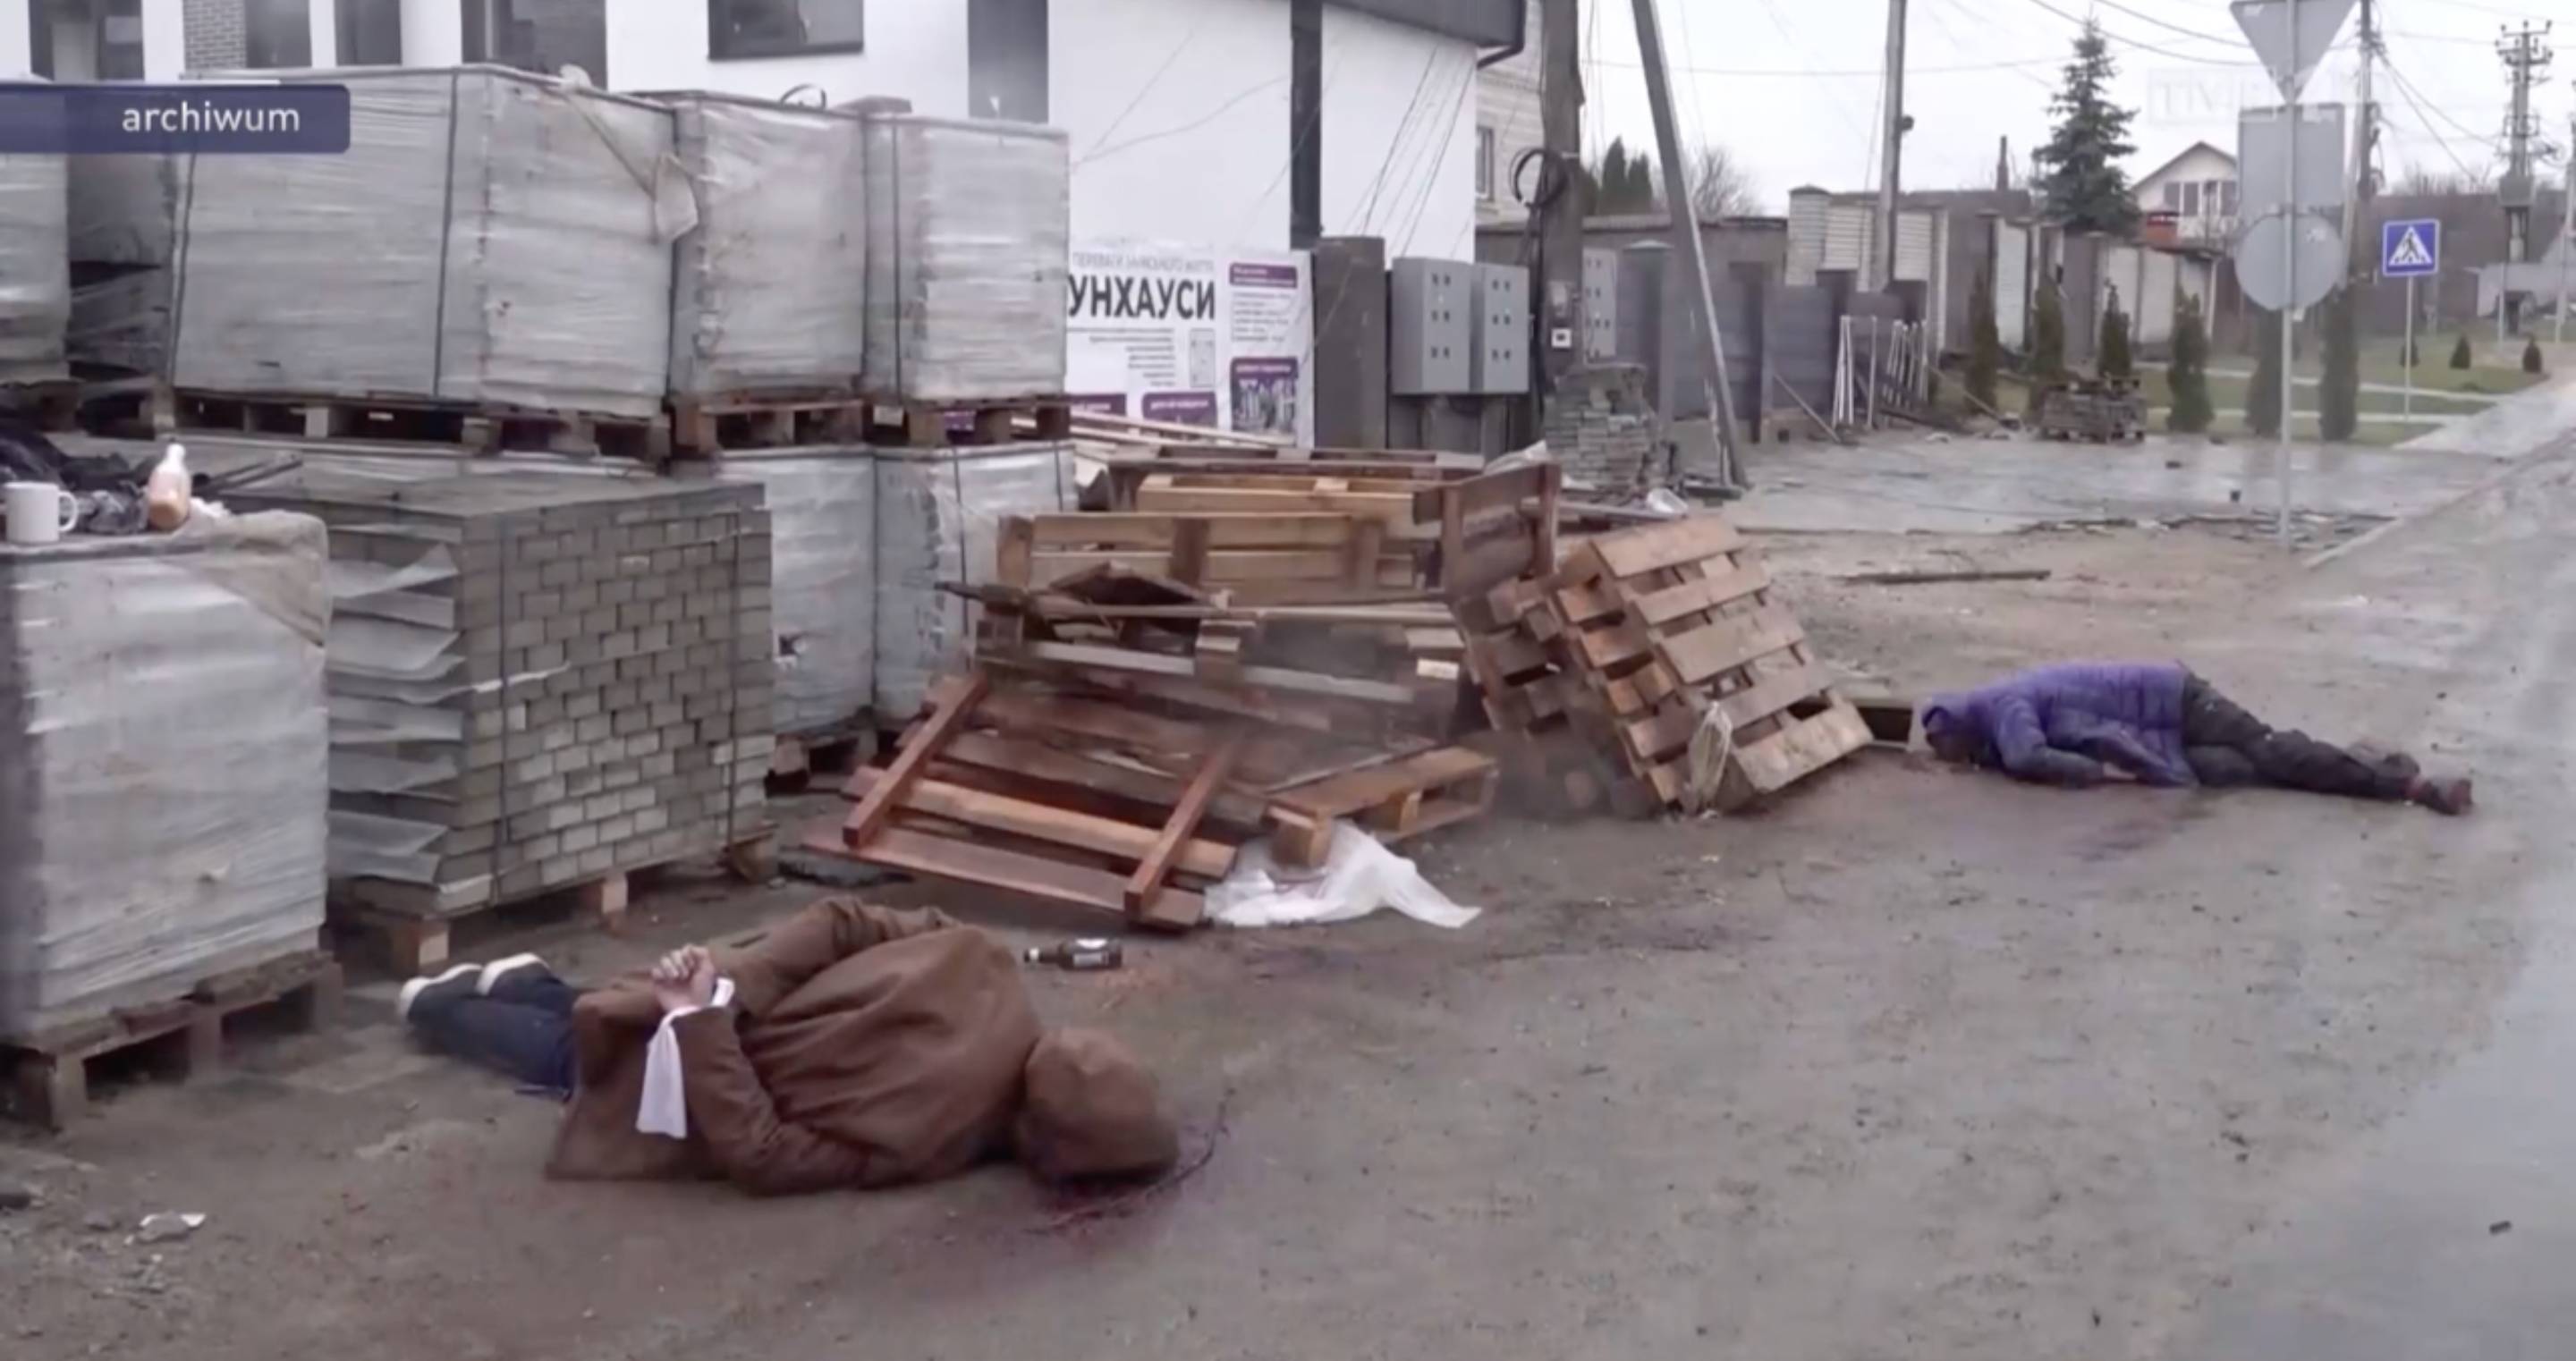 Zdjęcia ofiar rosyjskich zbrodni w Wiadomościach TVP